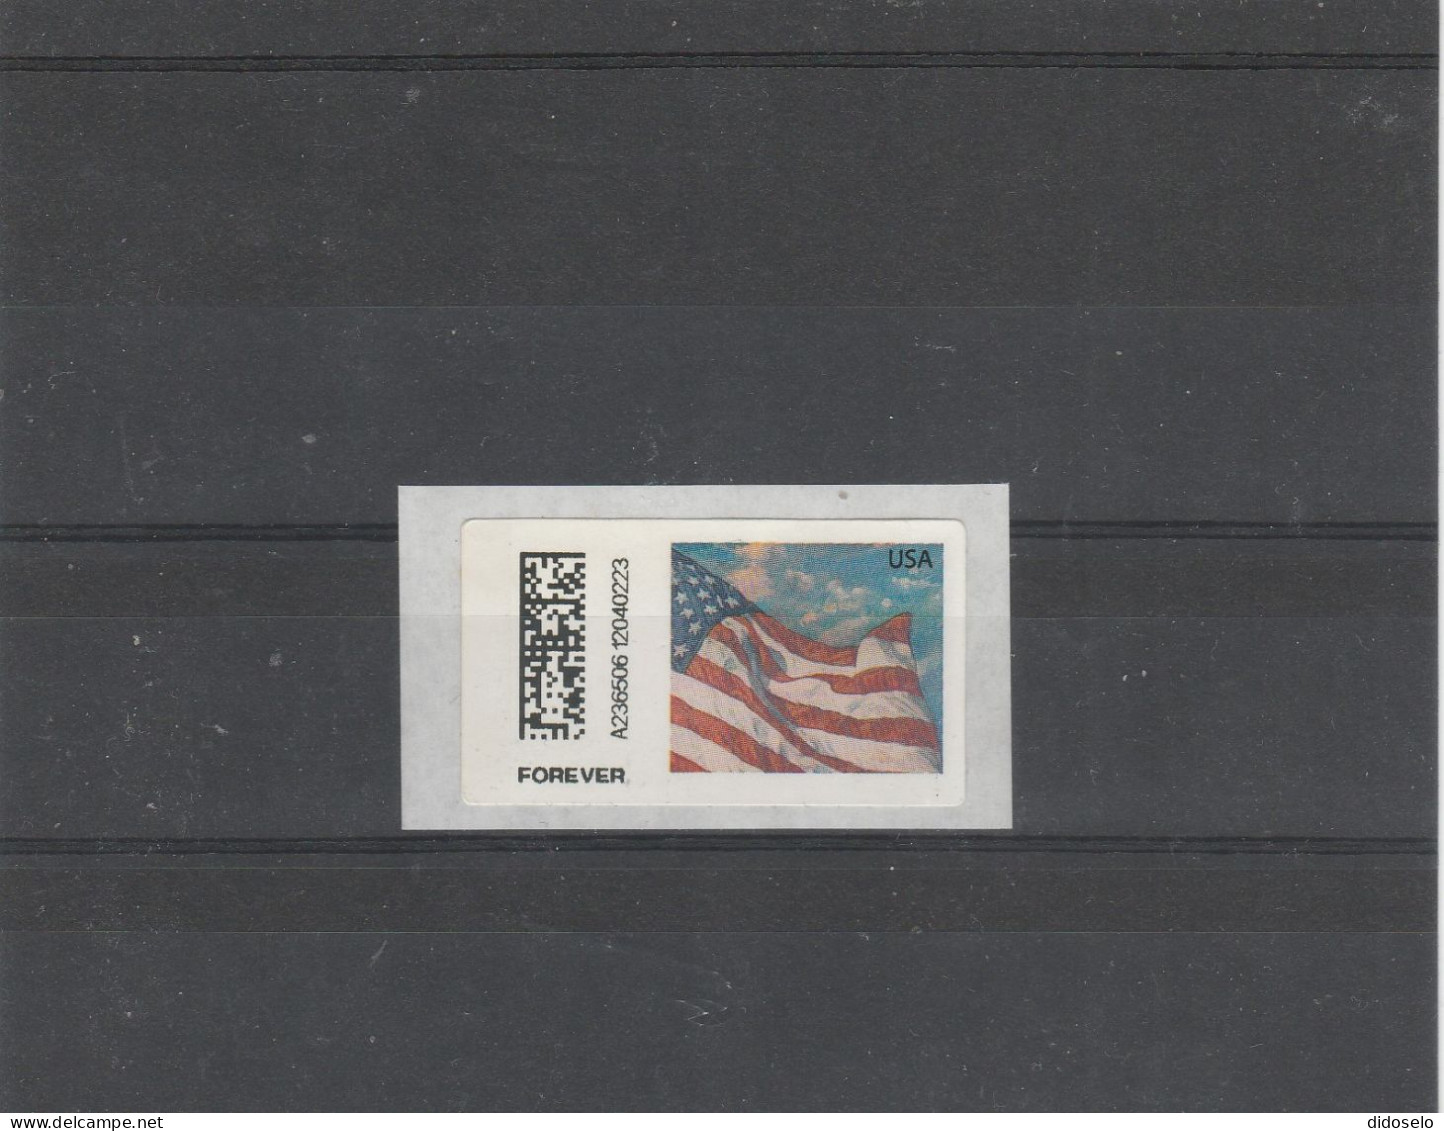 USA - 2023 - ATM Label / Forever / Mint - Timbres De Distributeurs [ATM]